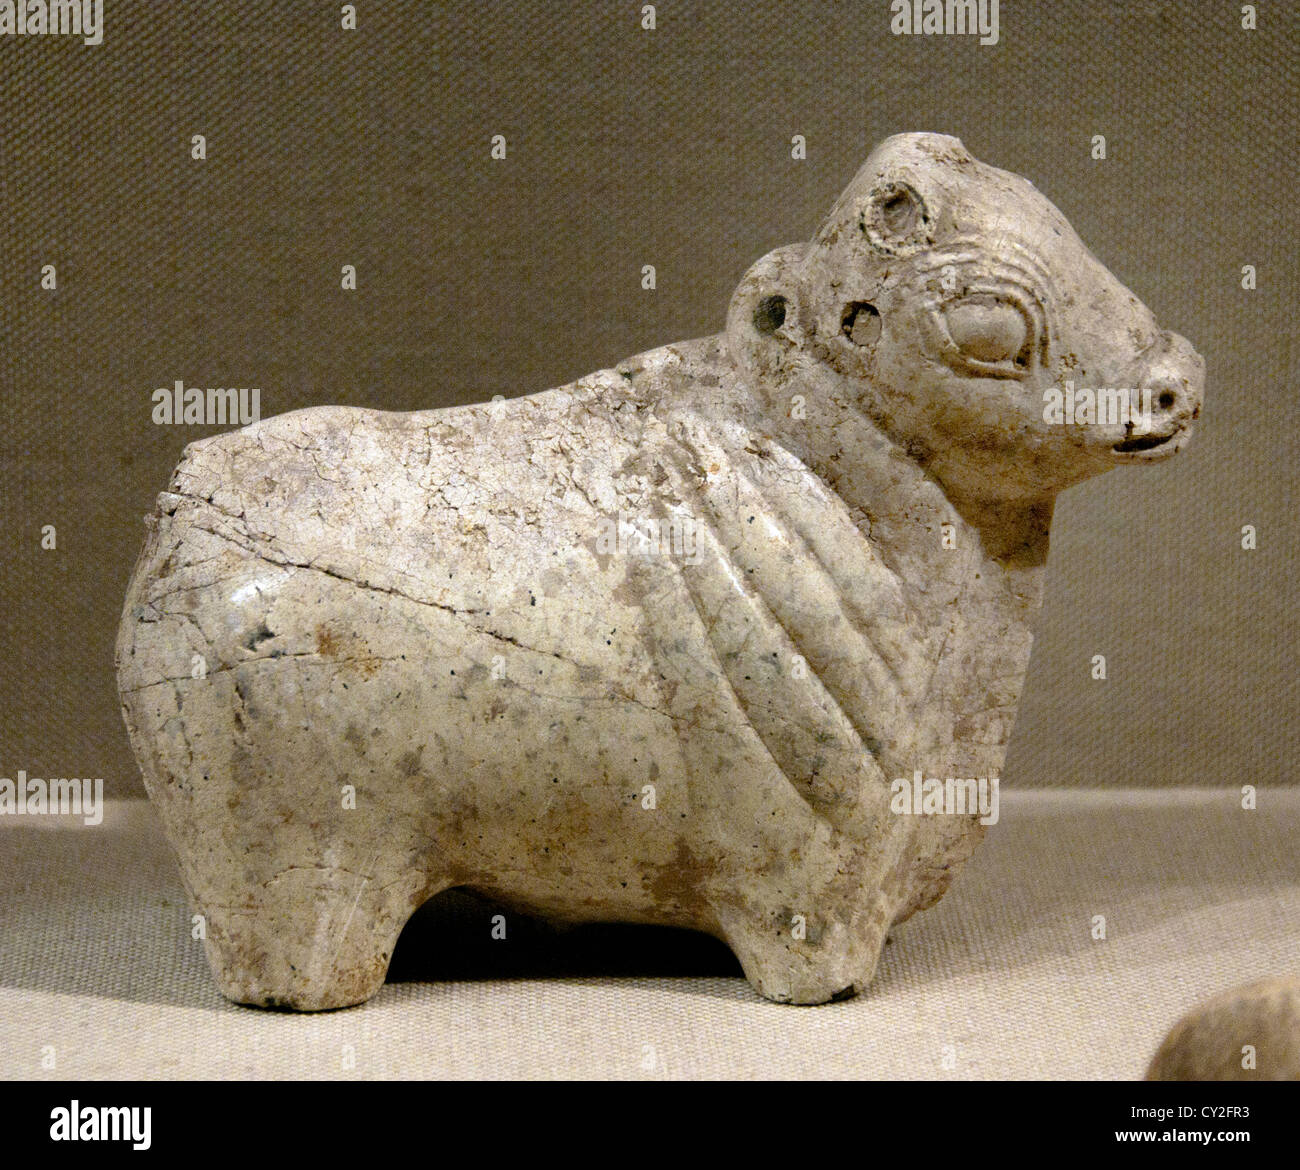 La figure d'un taureau de Harappan matures 2600 - 1900 BC ( vallée de l'Indus au Pakistan et le nord-ouest de l'Inde ) en pierre 15 cm Serpentine Banque D'Images